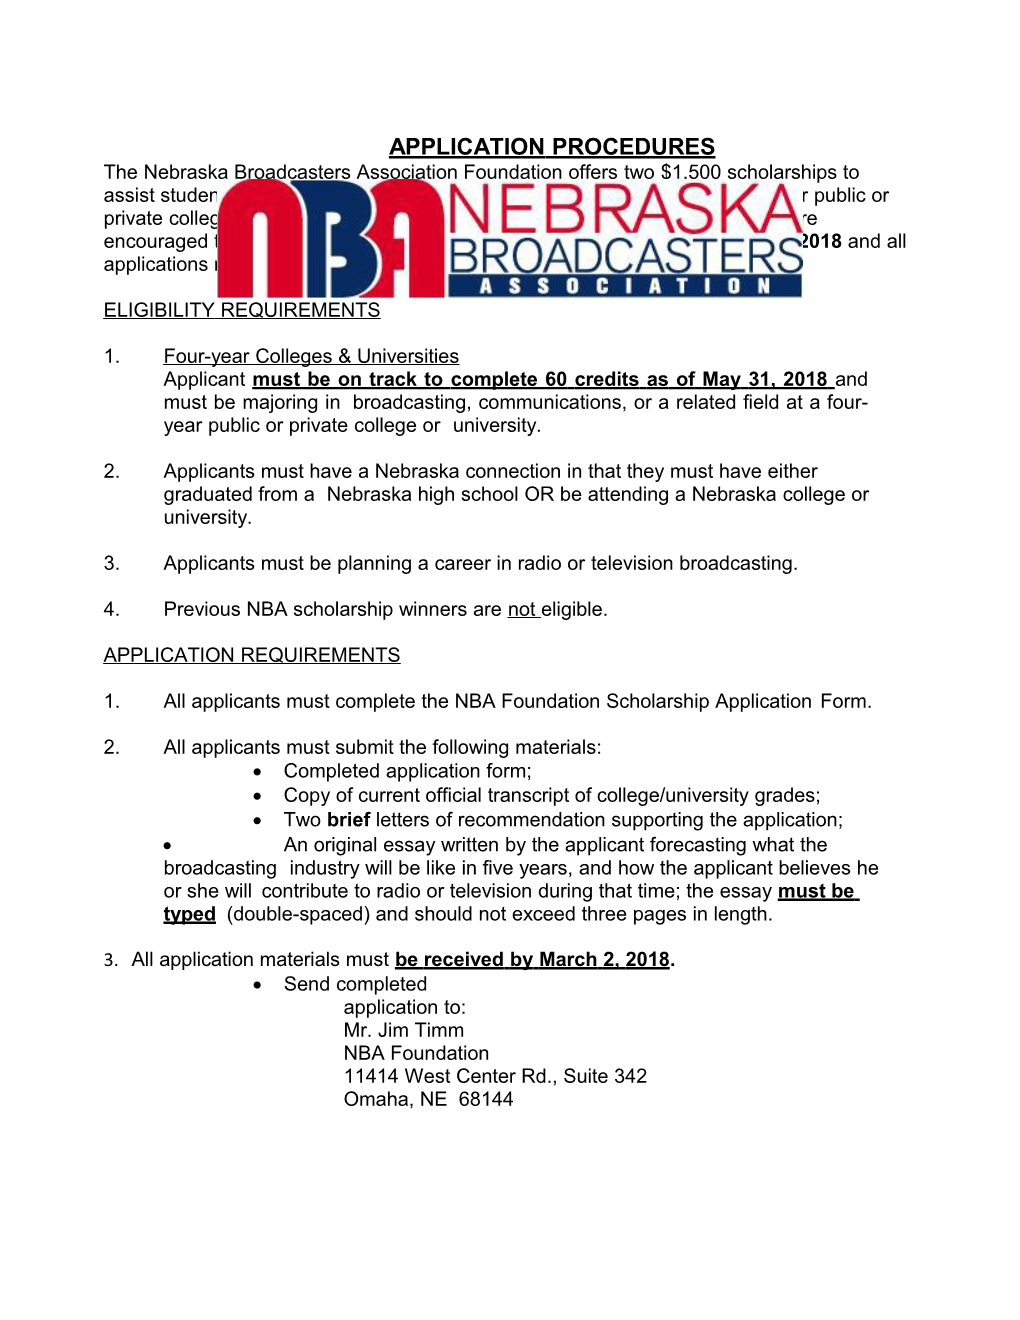 Nebraska Broadcasters Association Foundation